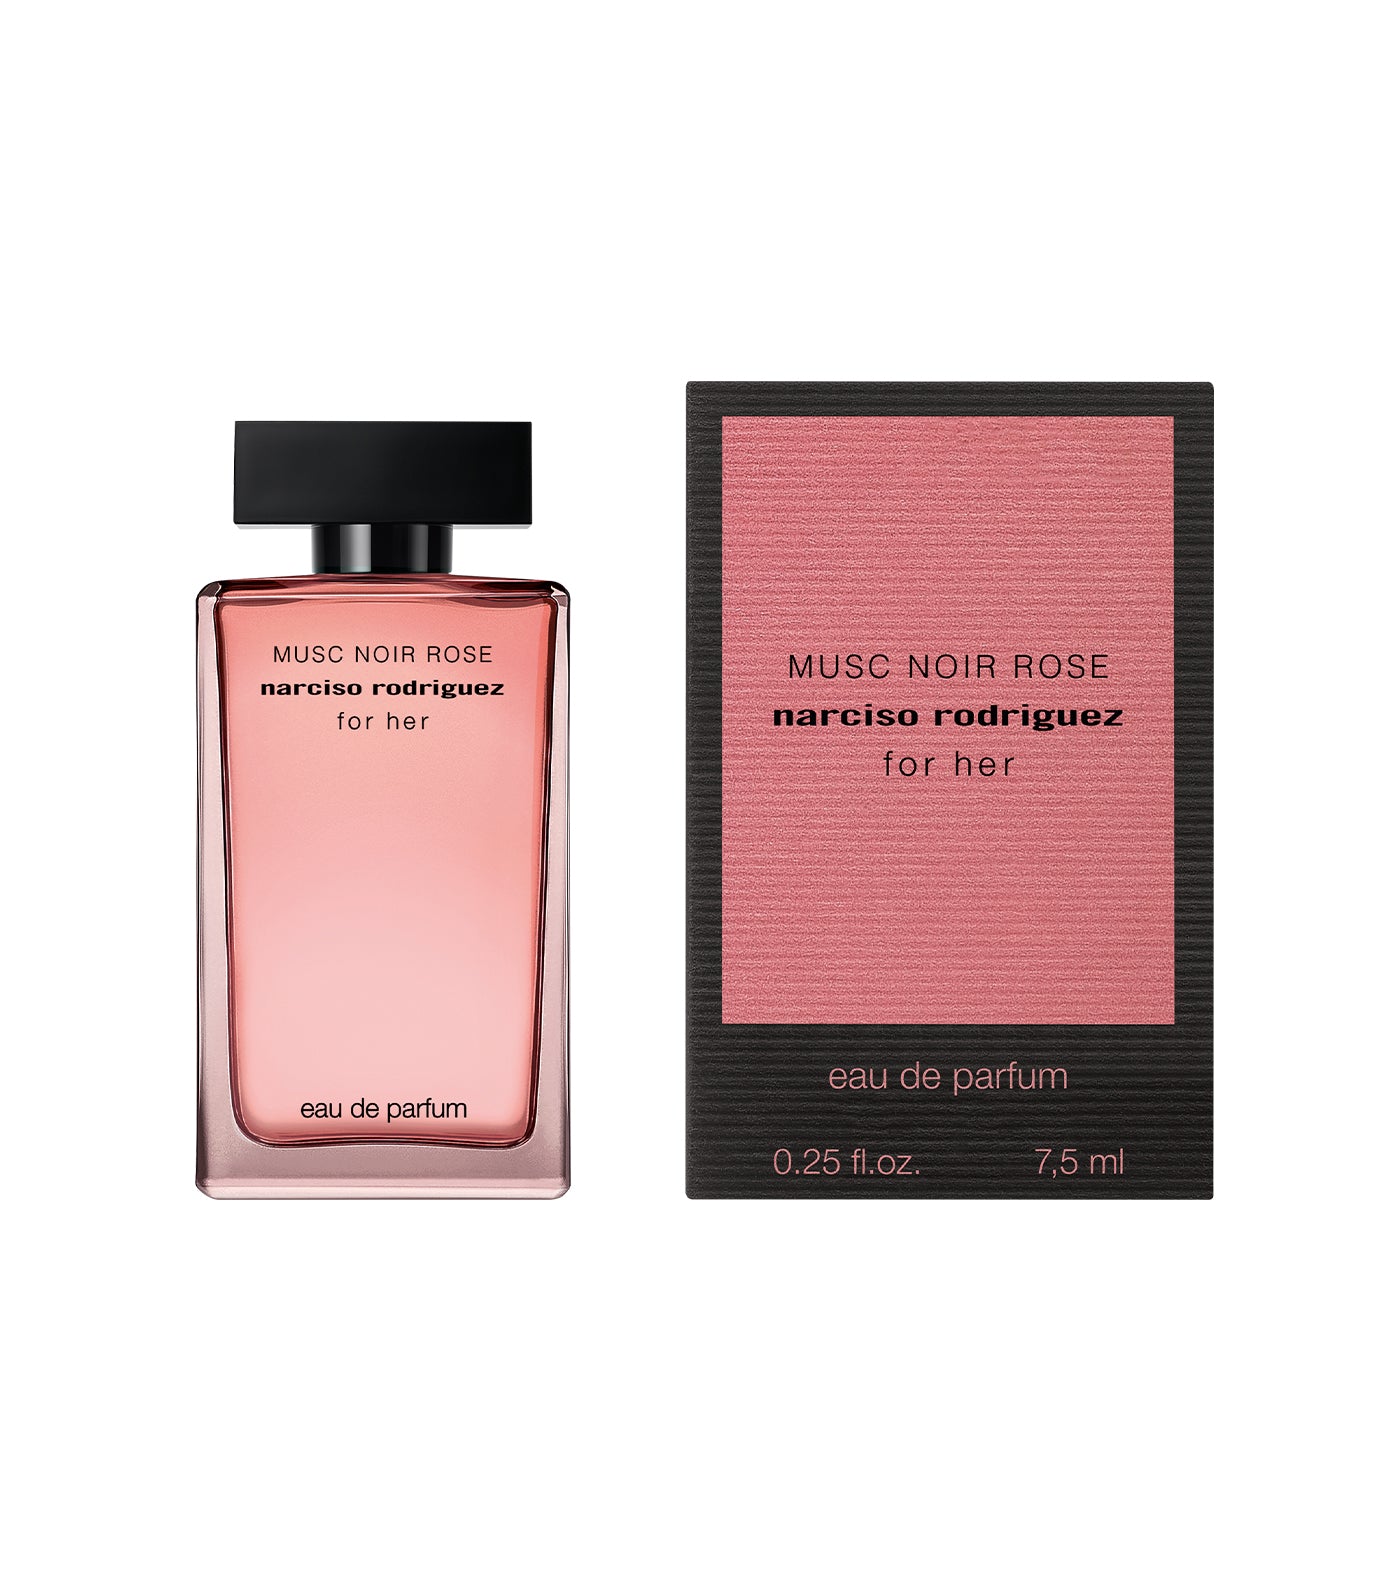 Free Miniature for her MUSC NOIR ROSE Eau de Parfum